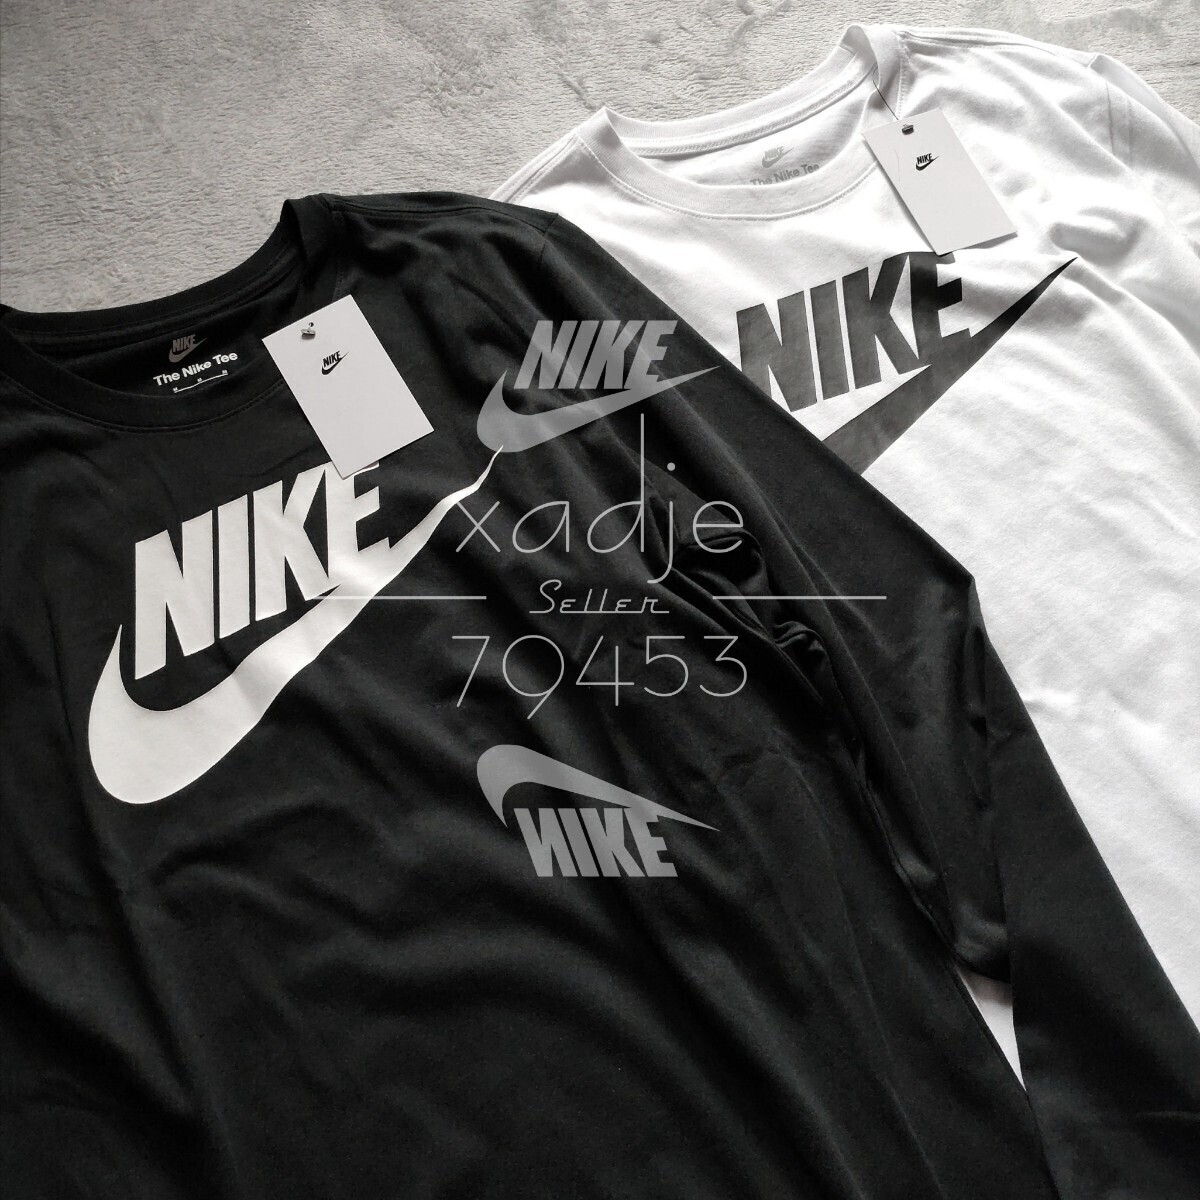  новый товар стандартный товар NIKE Nike NSW длинный рукав long T 2 шт. комплект чёрный черный белый белый Logo f.-chulasushu принт M